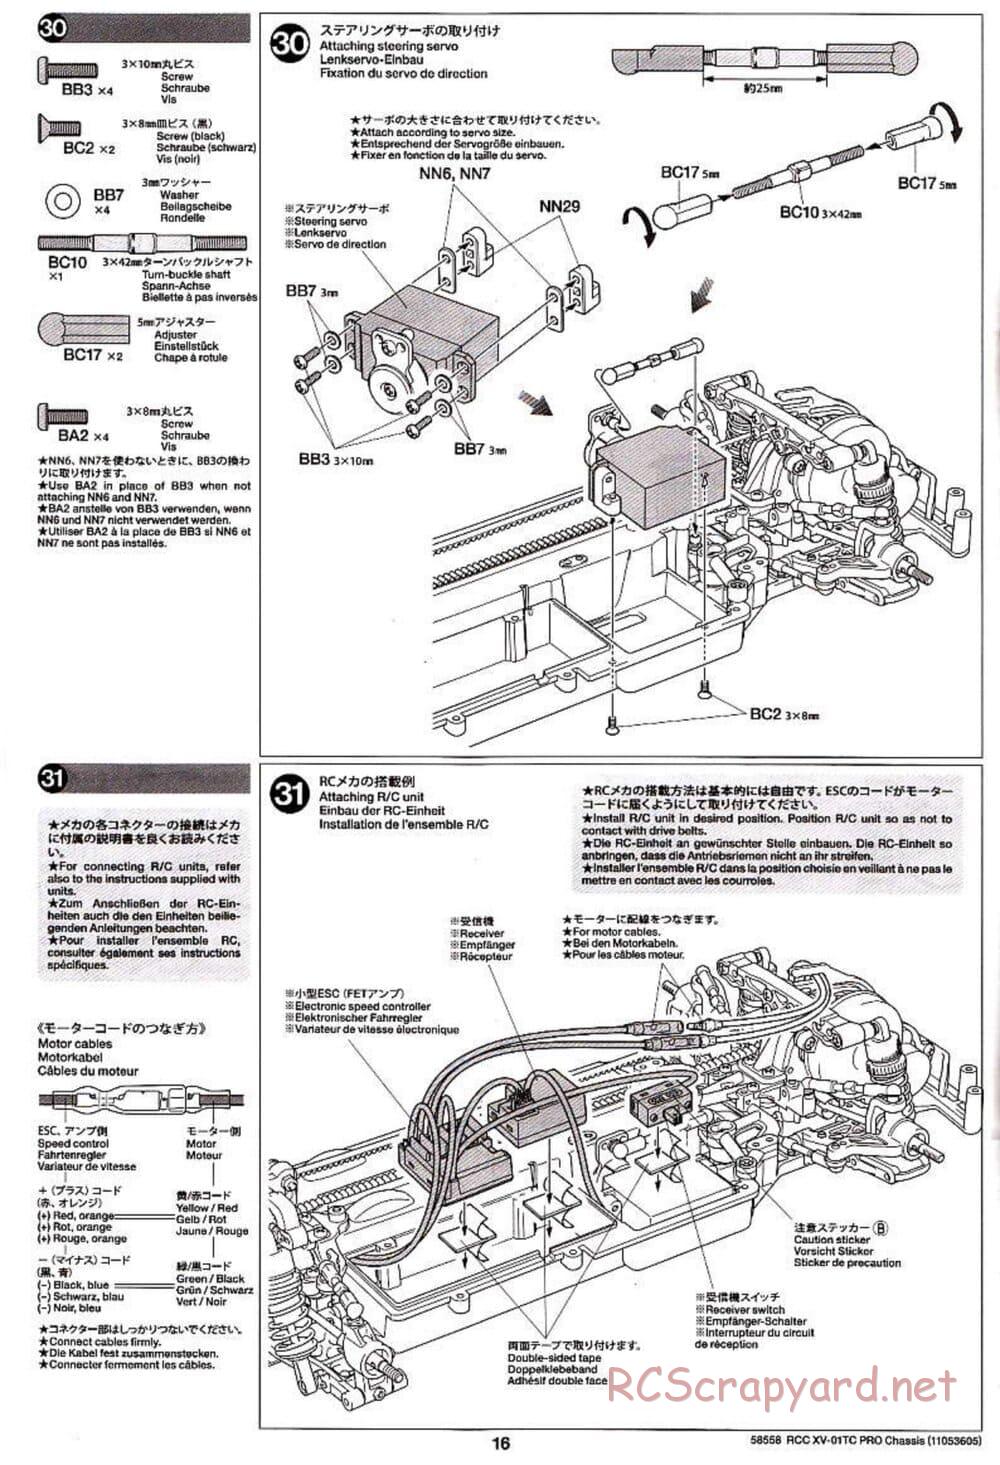 Tamiya - XV-01TC Chassis - Manual - Page 16